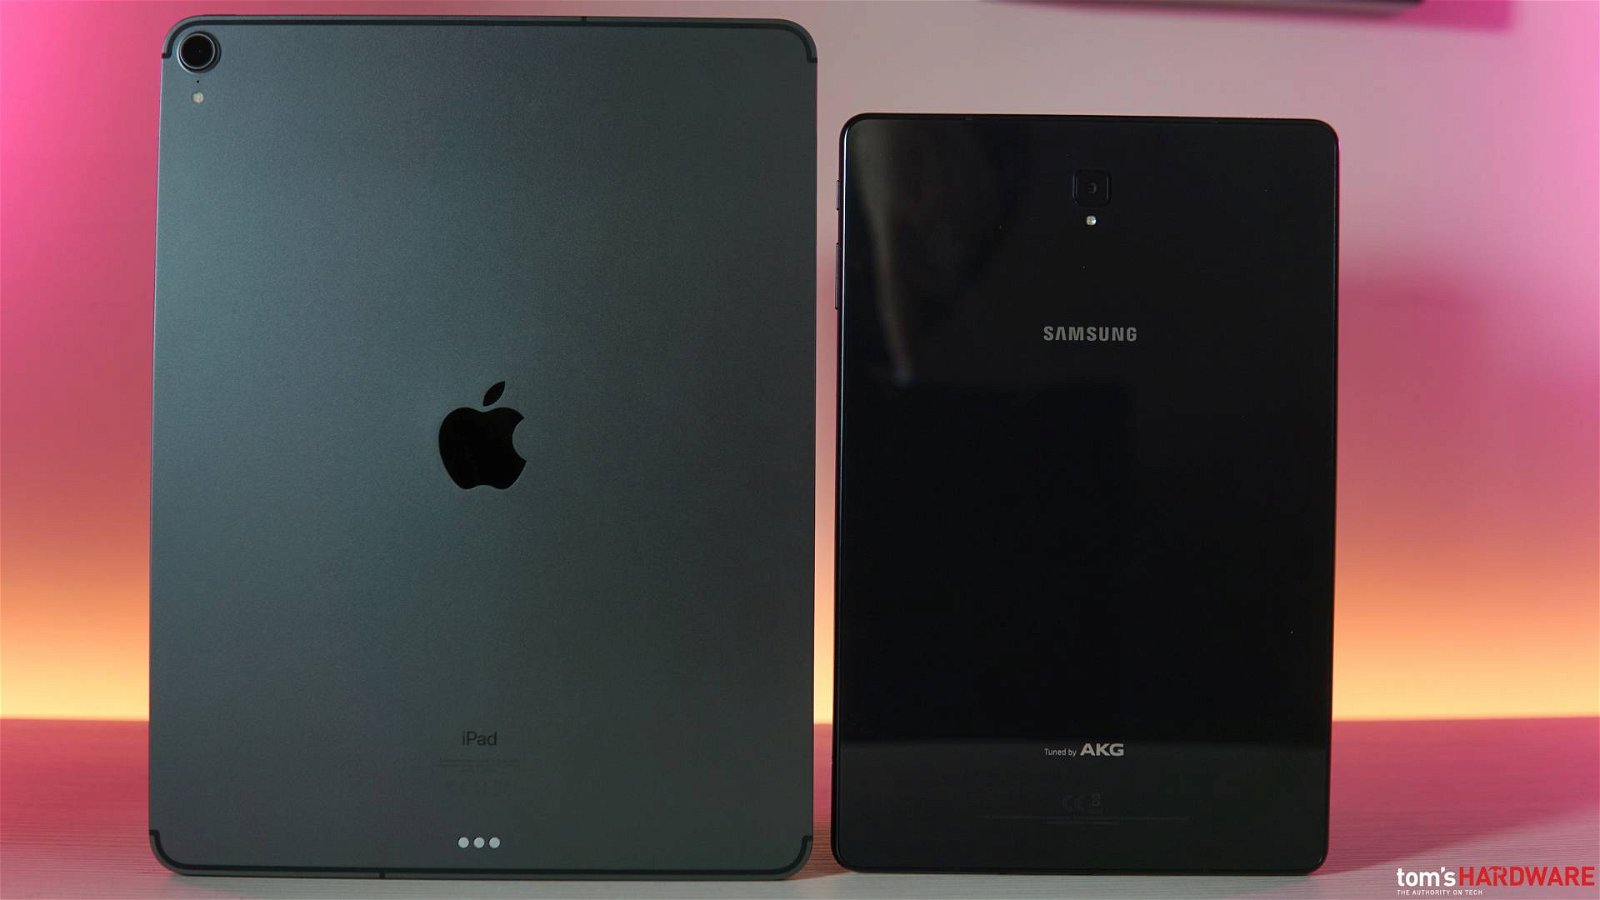 Immagine di Apple iPad Pro 2018 e Samsung Galaxy Tab S4 a confronto: sostanzialmente una sfida tra iOS e Android